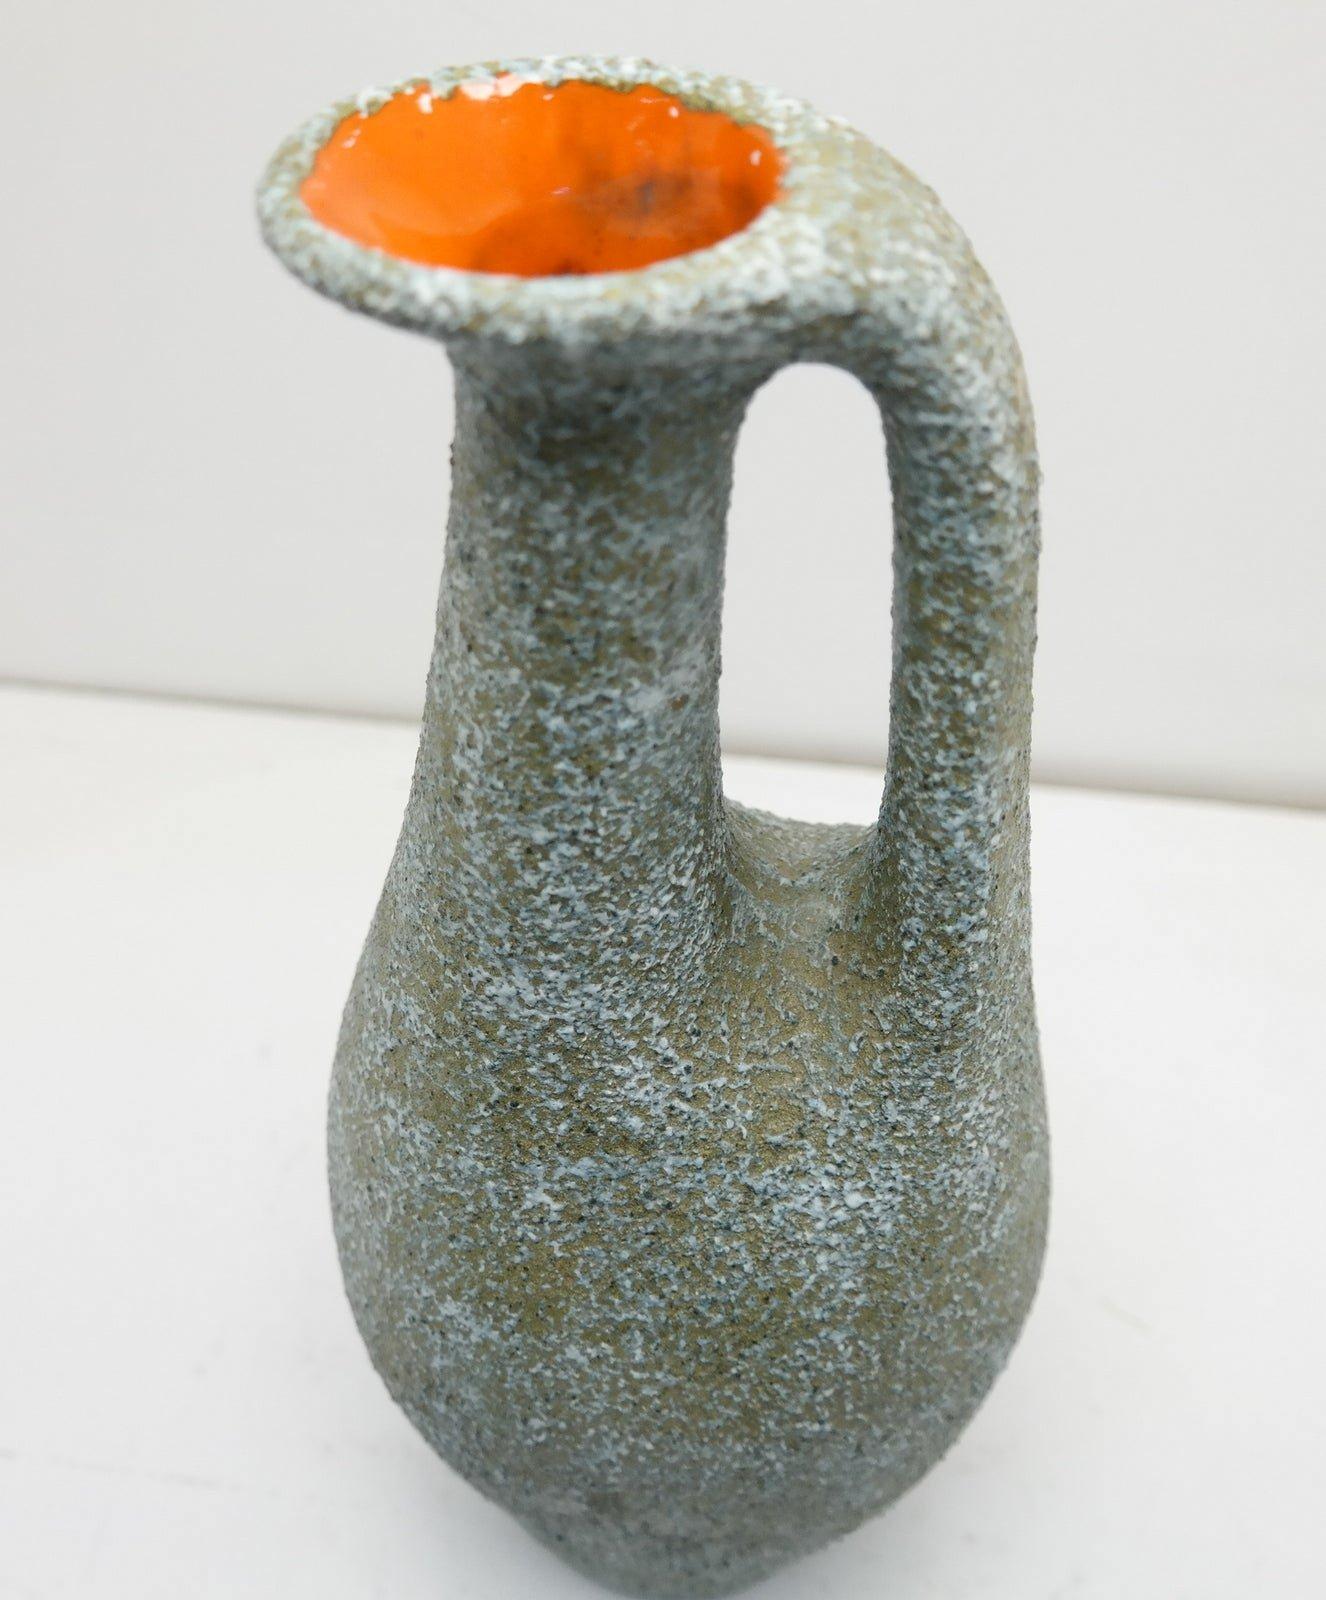 Hand Made Ceramic Jug Vase with Turquoise and Orange Cracked Glazed, 1970's 1